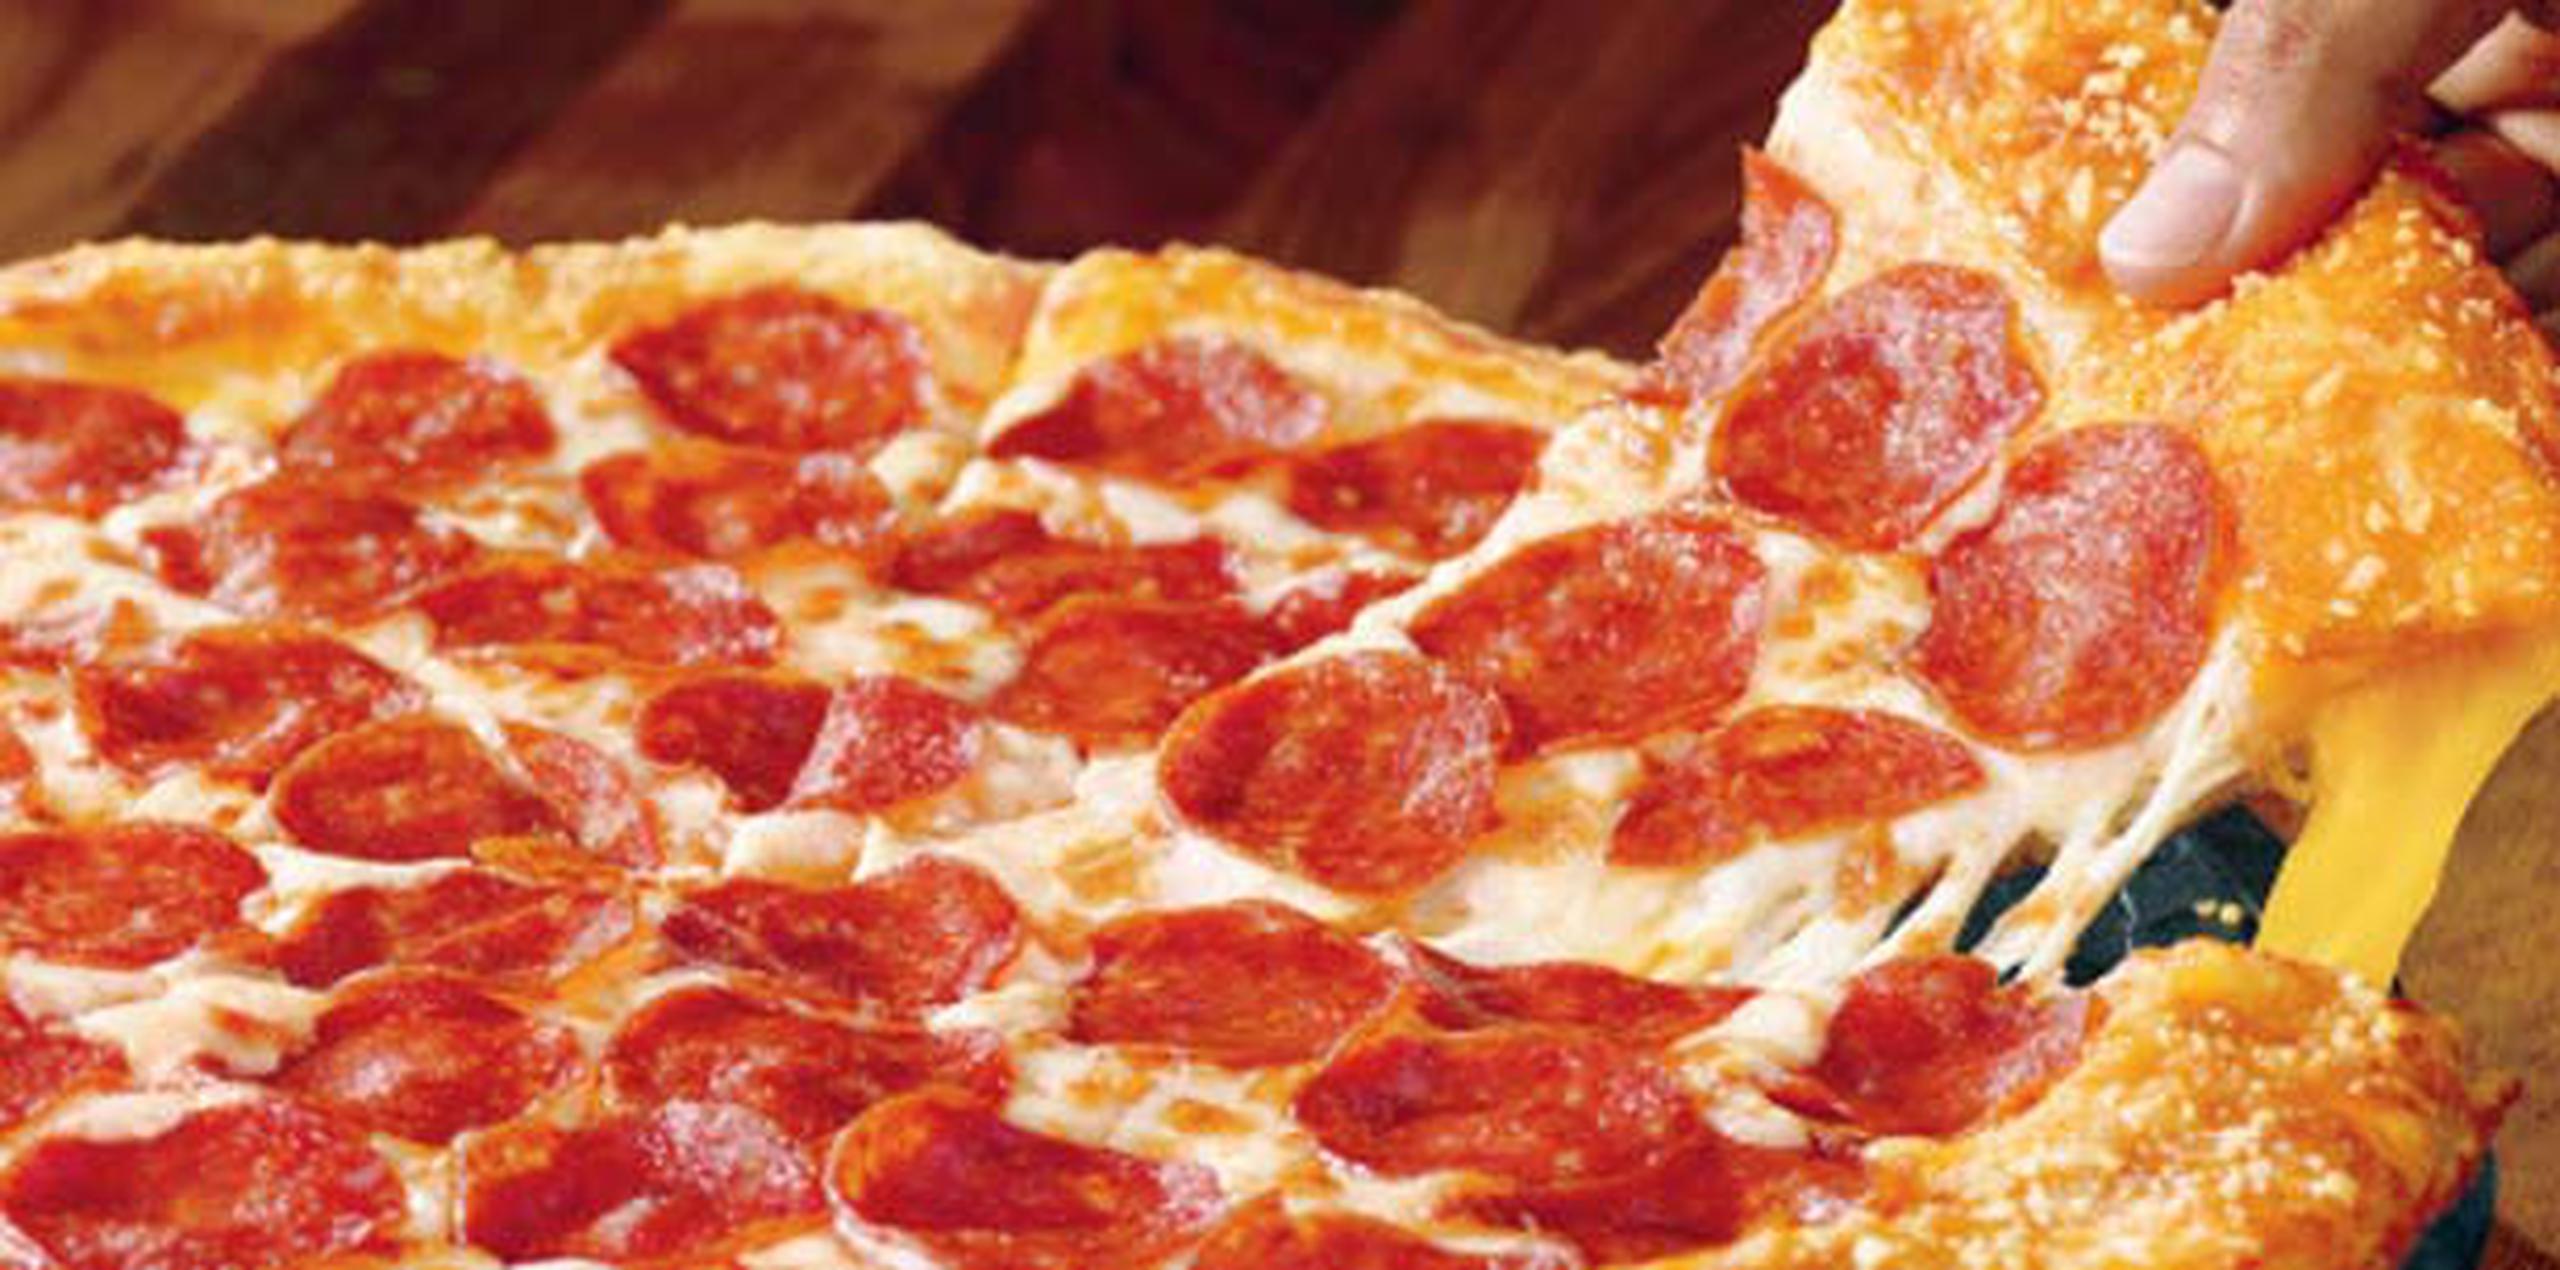 Al registrarse y crear una cuenta en pizzahutpr.com, los clientes tendrán acceso a ofertas, cupones y pizzas exclusivas en el website. (Pizza Hut)